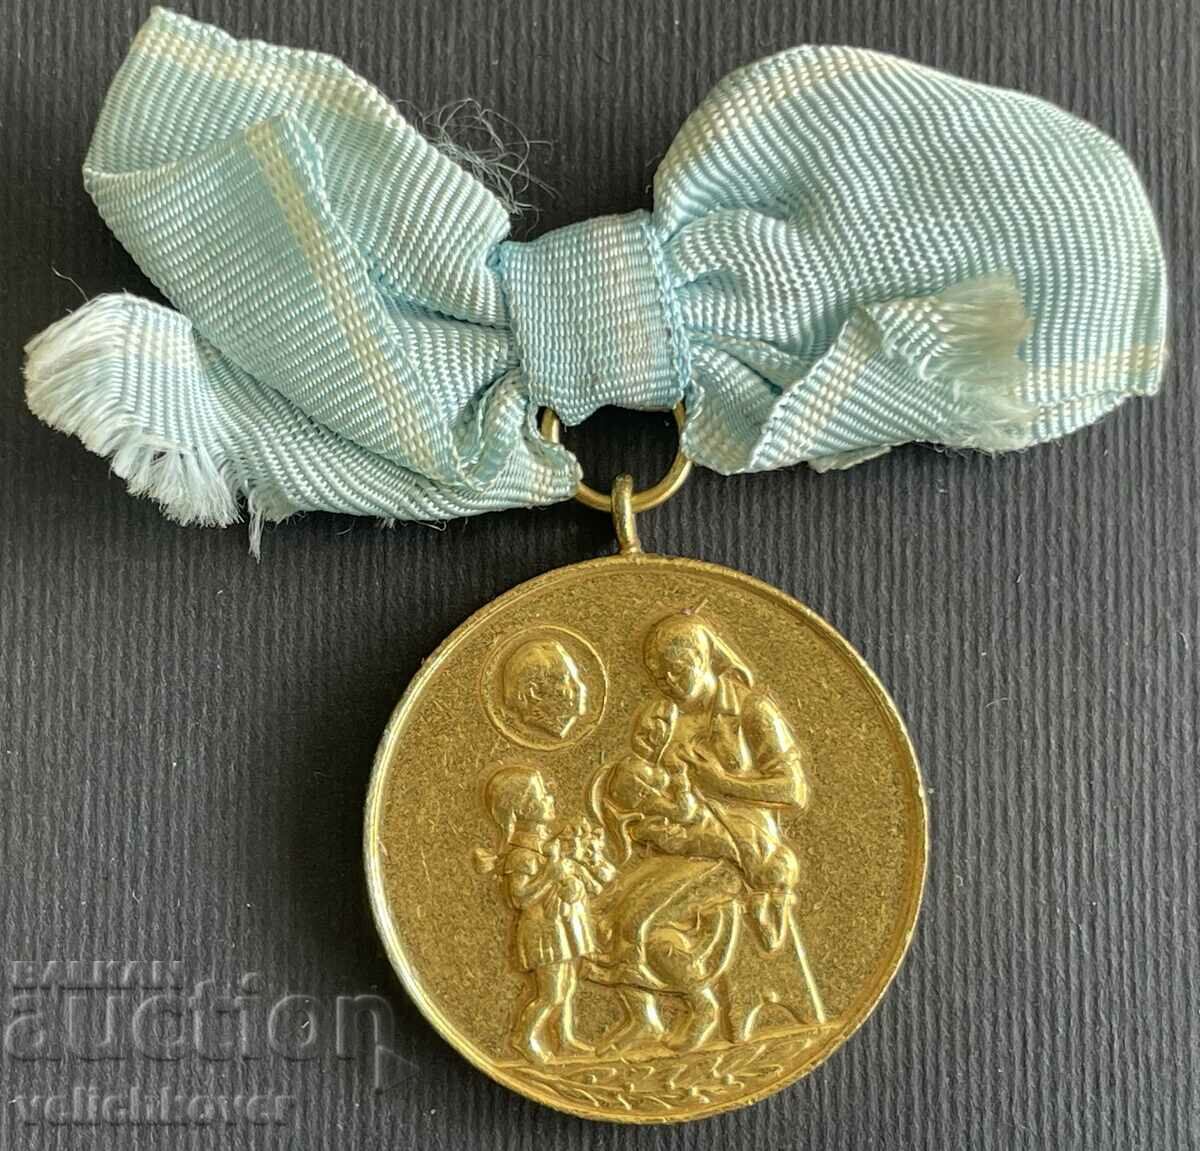 35219 България медал За Майчинство 1-ва степен златен 50-те